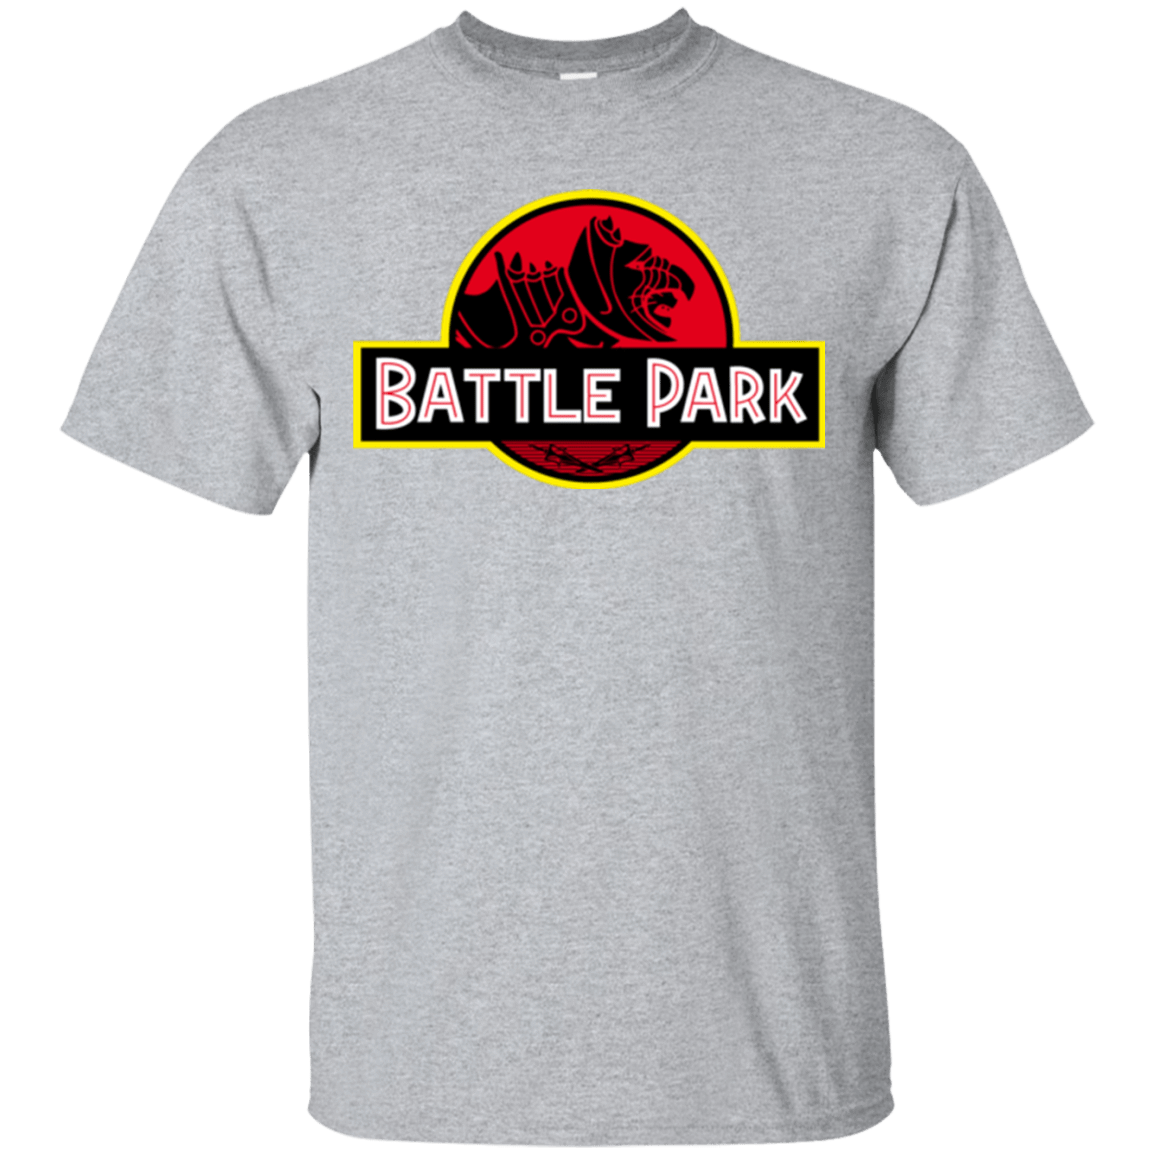 T-Shirts Sport Grey / Small Battle Park T-Shirt